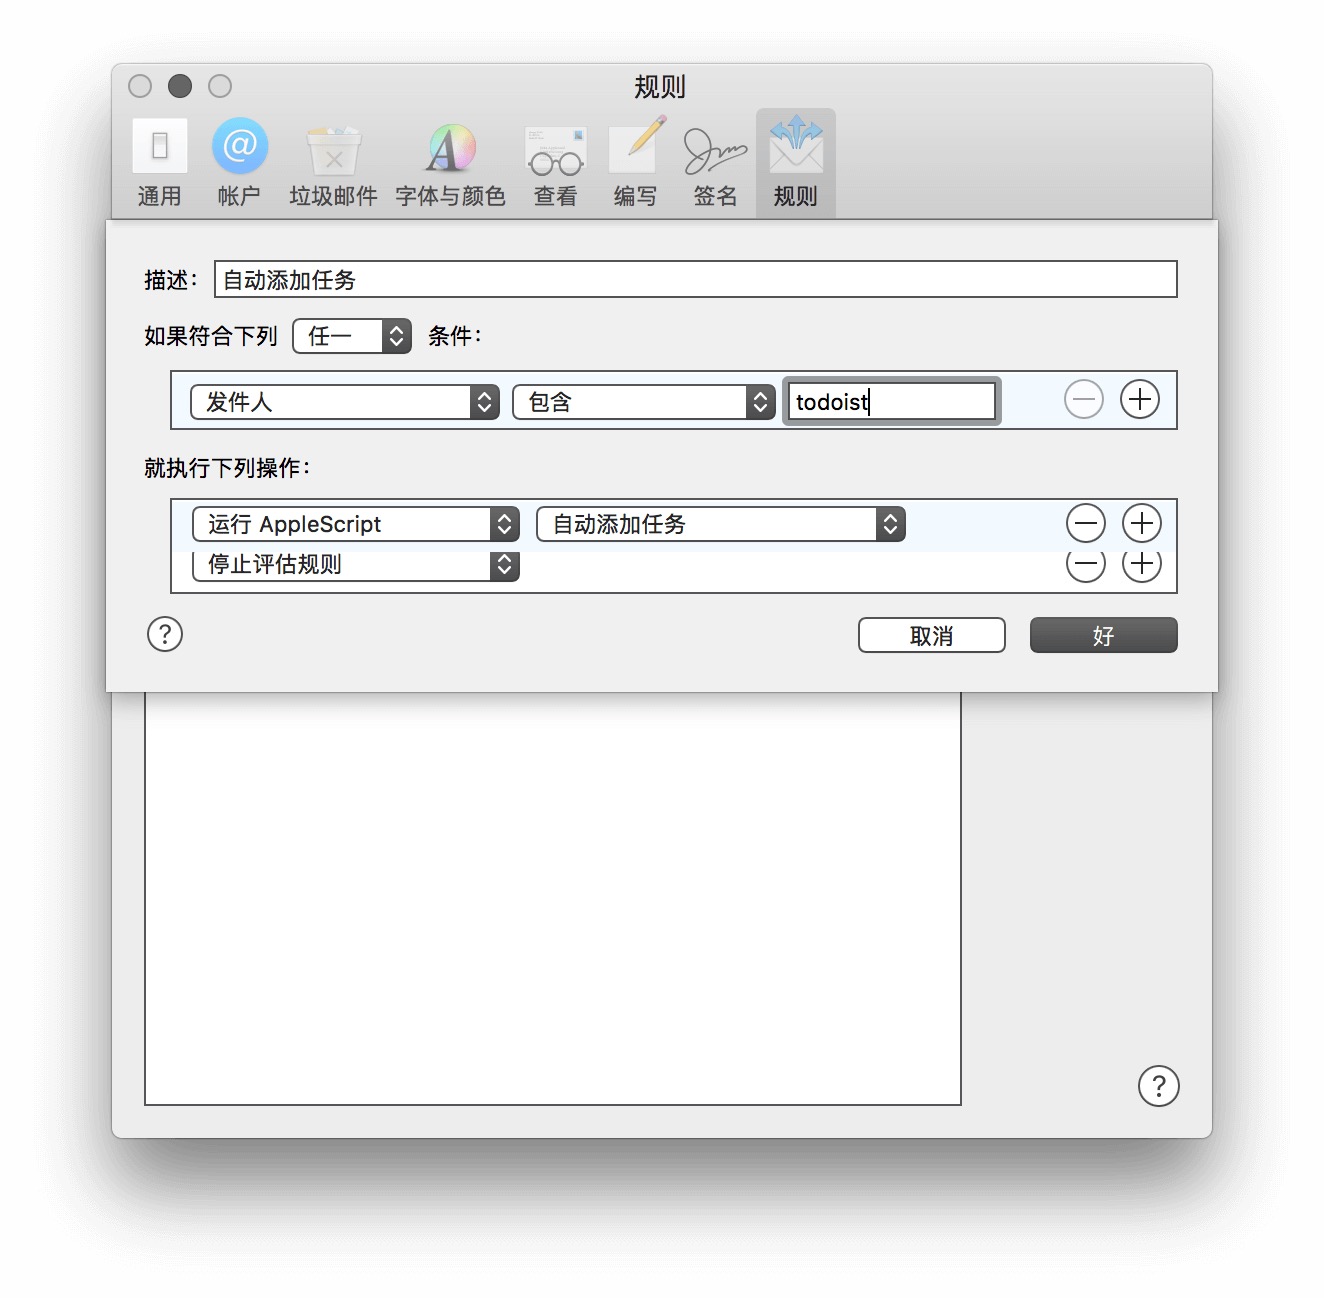 被邮件淹没的你，可以用 Mac 原生邮箱的规则进行半自动处理